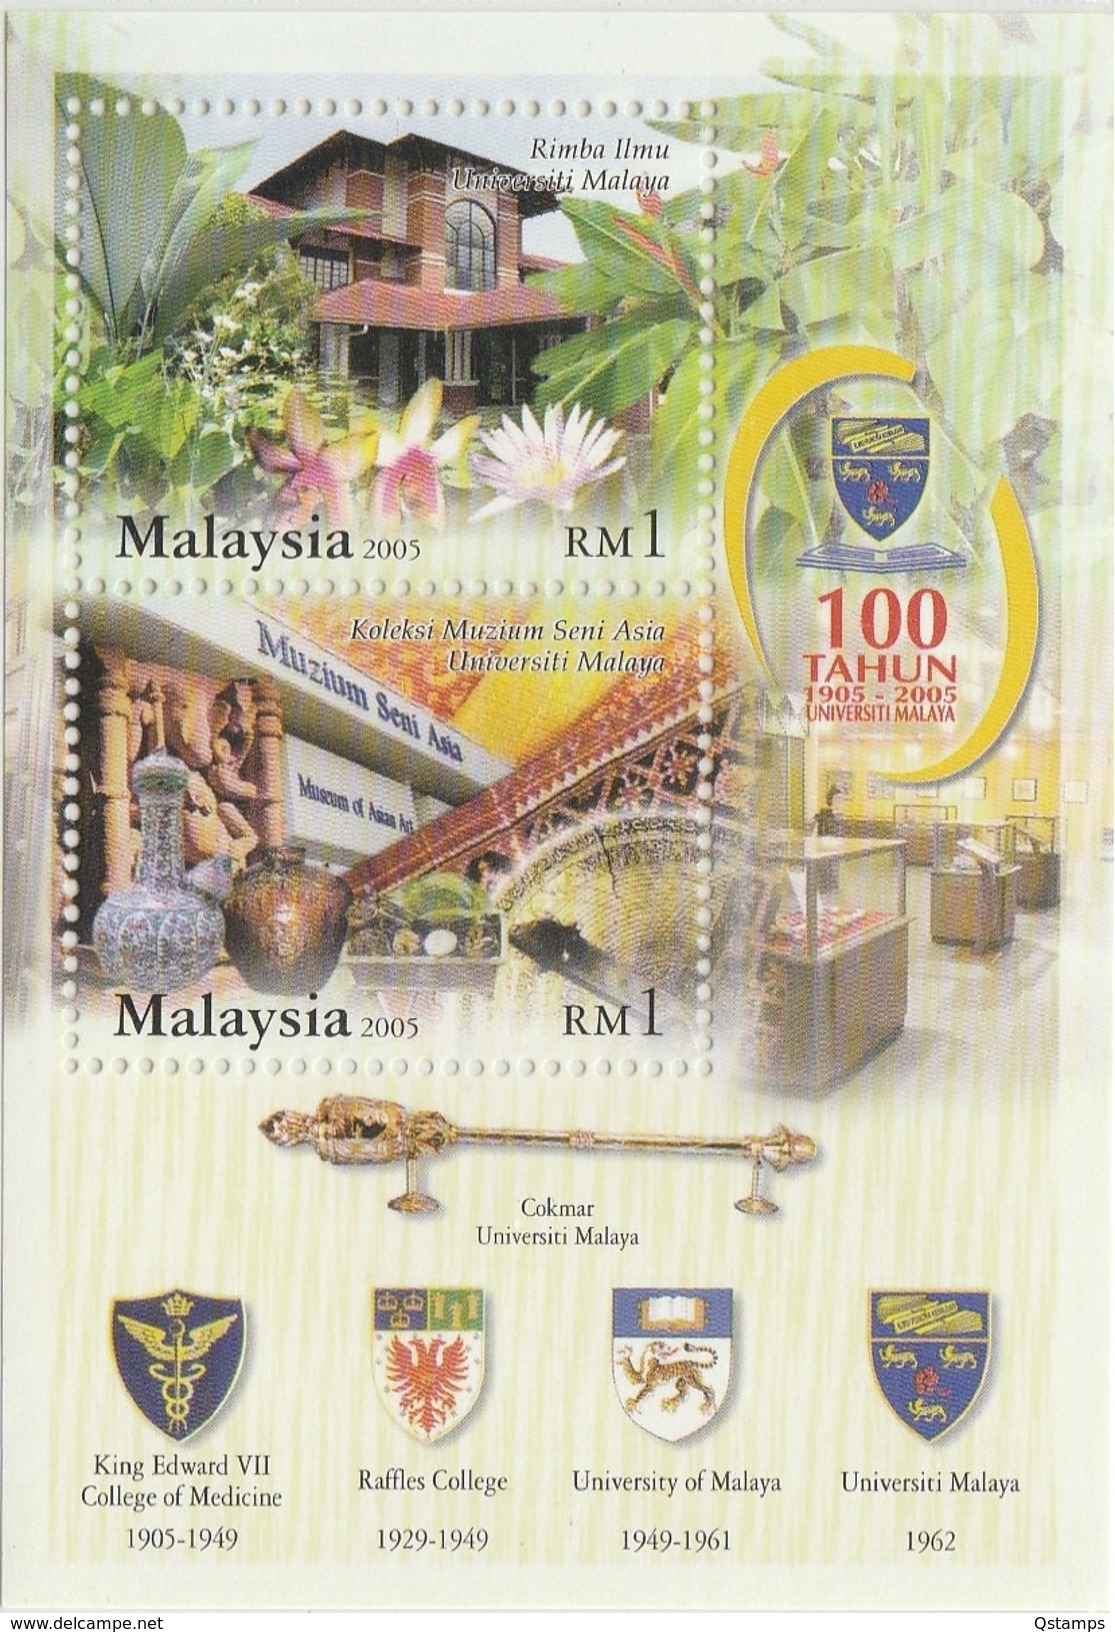 MALAYSIA 2005 100 YEARS OF UNIVERSITY MALAYA SG MS1275 MINT MNH - Malaysia (1964-...)